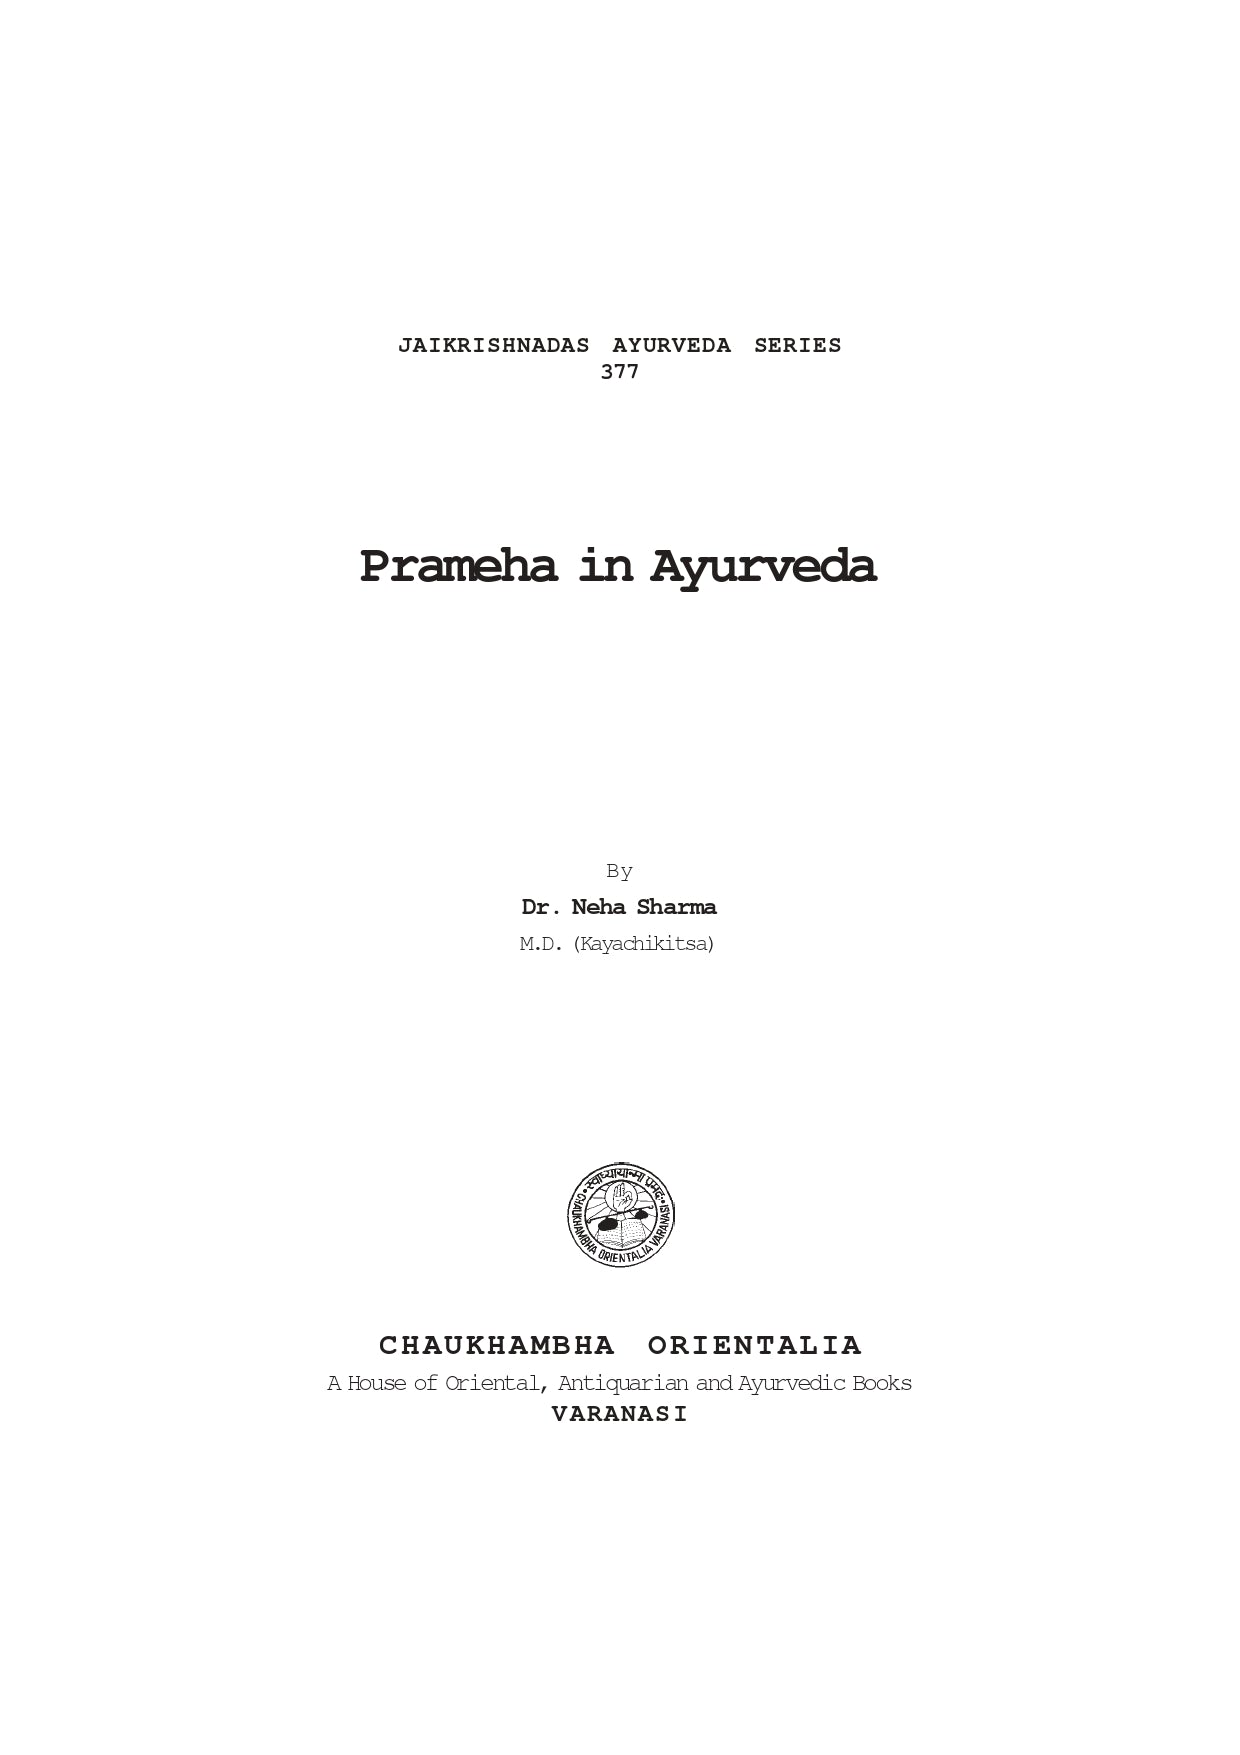 Chaukhambha Orientalia Prameha in Ayurveda